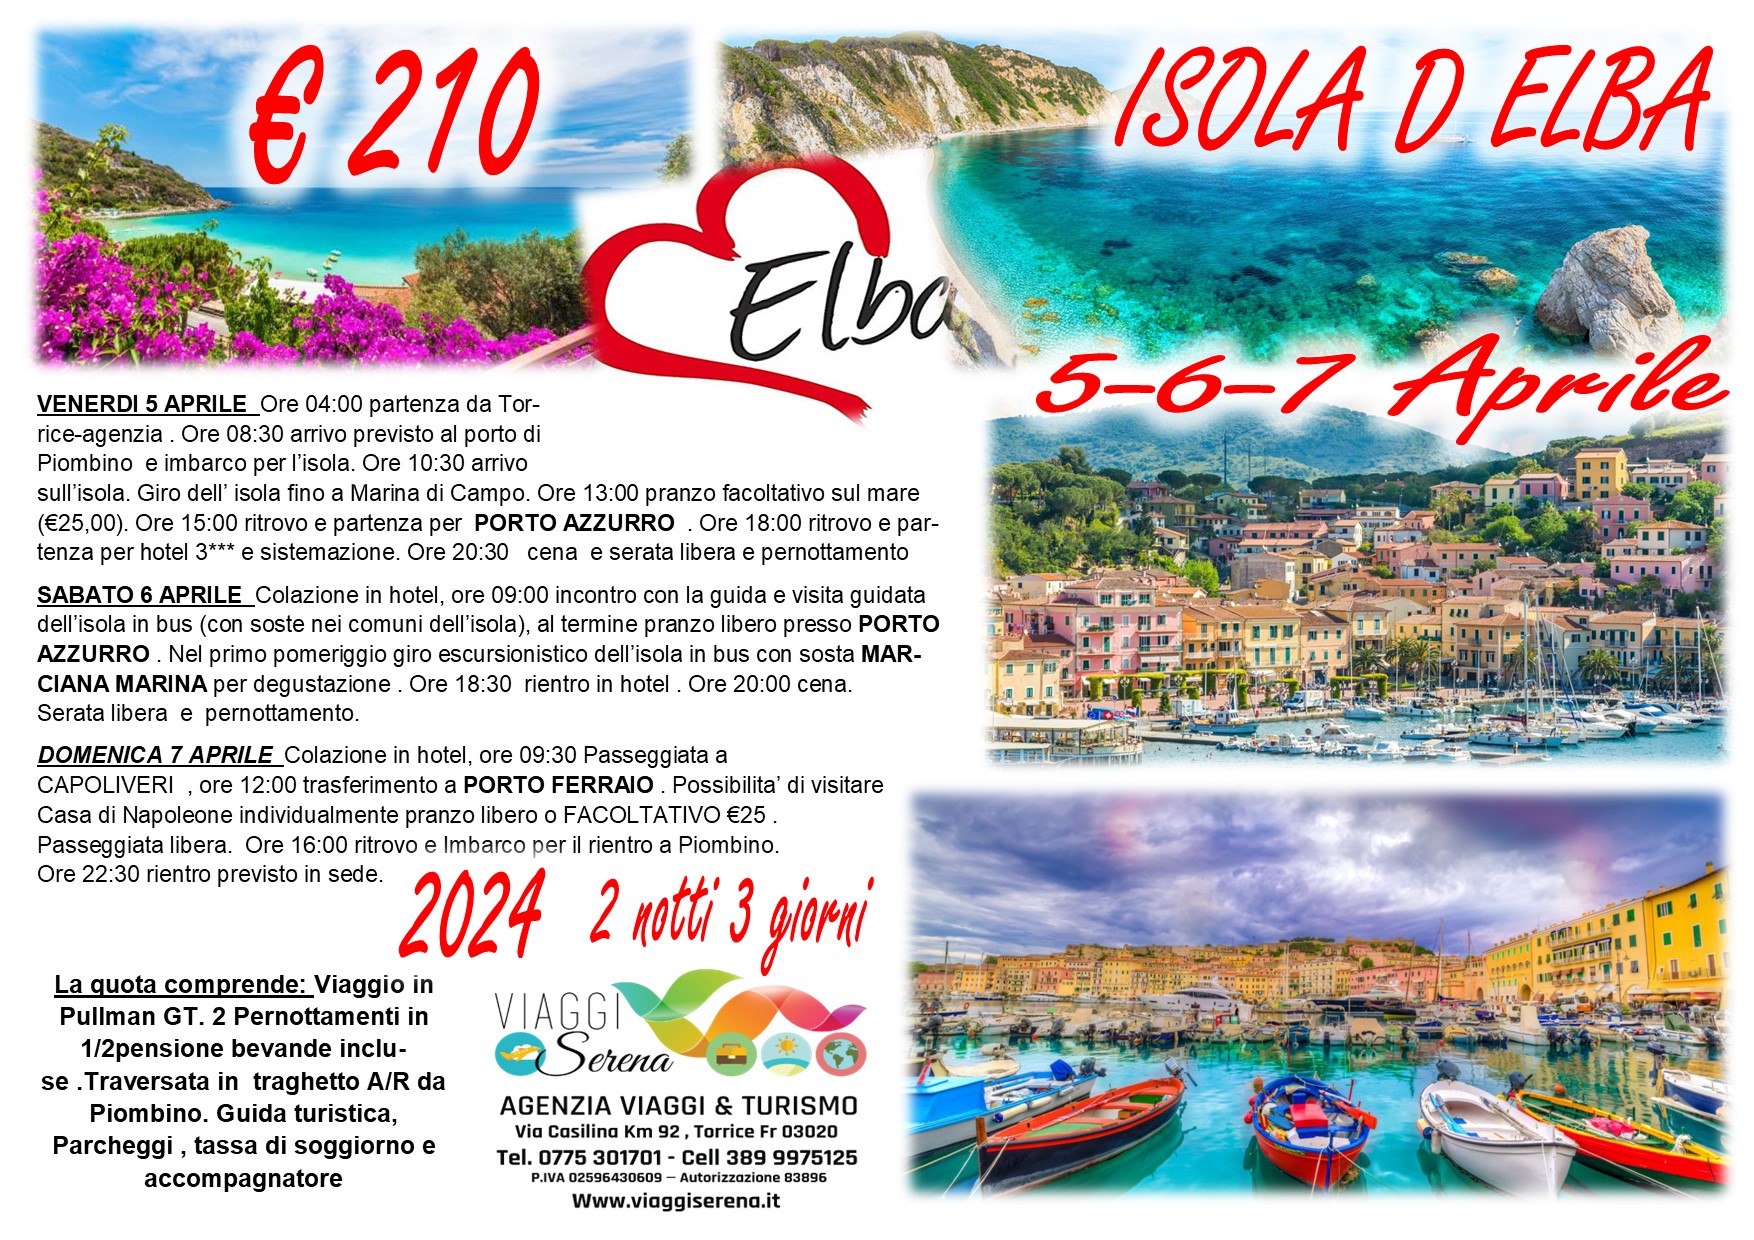 Viaggi di gruppo: Isola d’Elba & i suoi Comuni 5-6-7 Aprile  €210,00